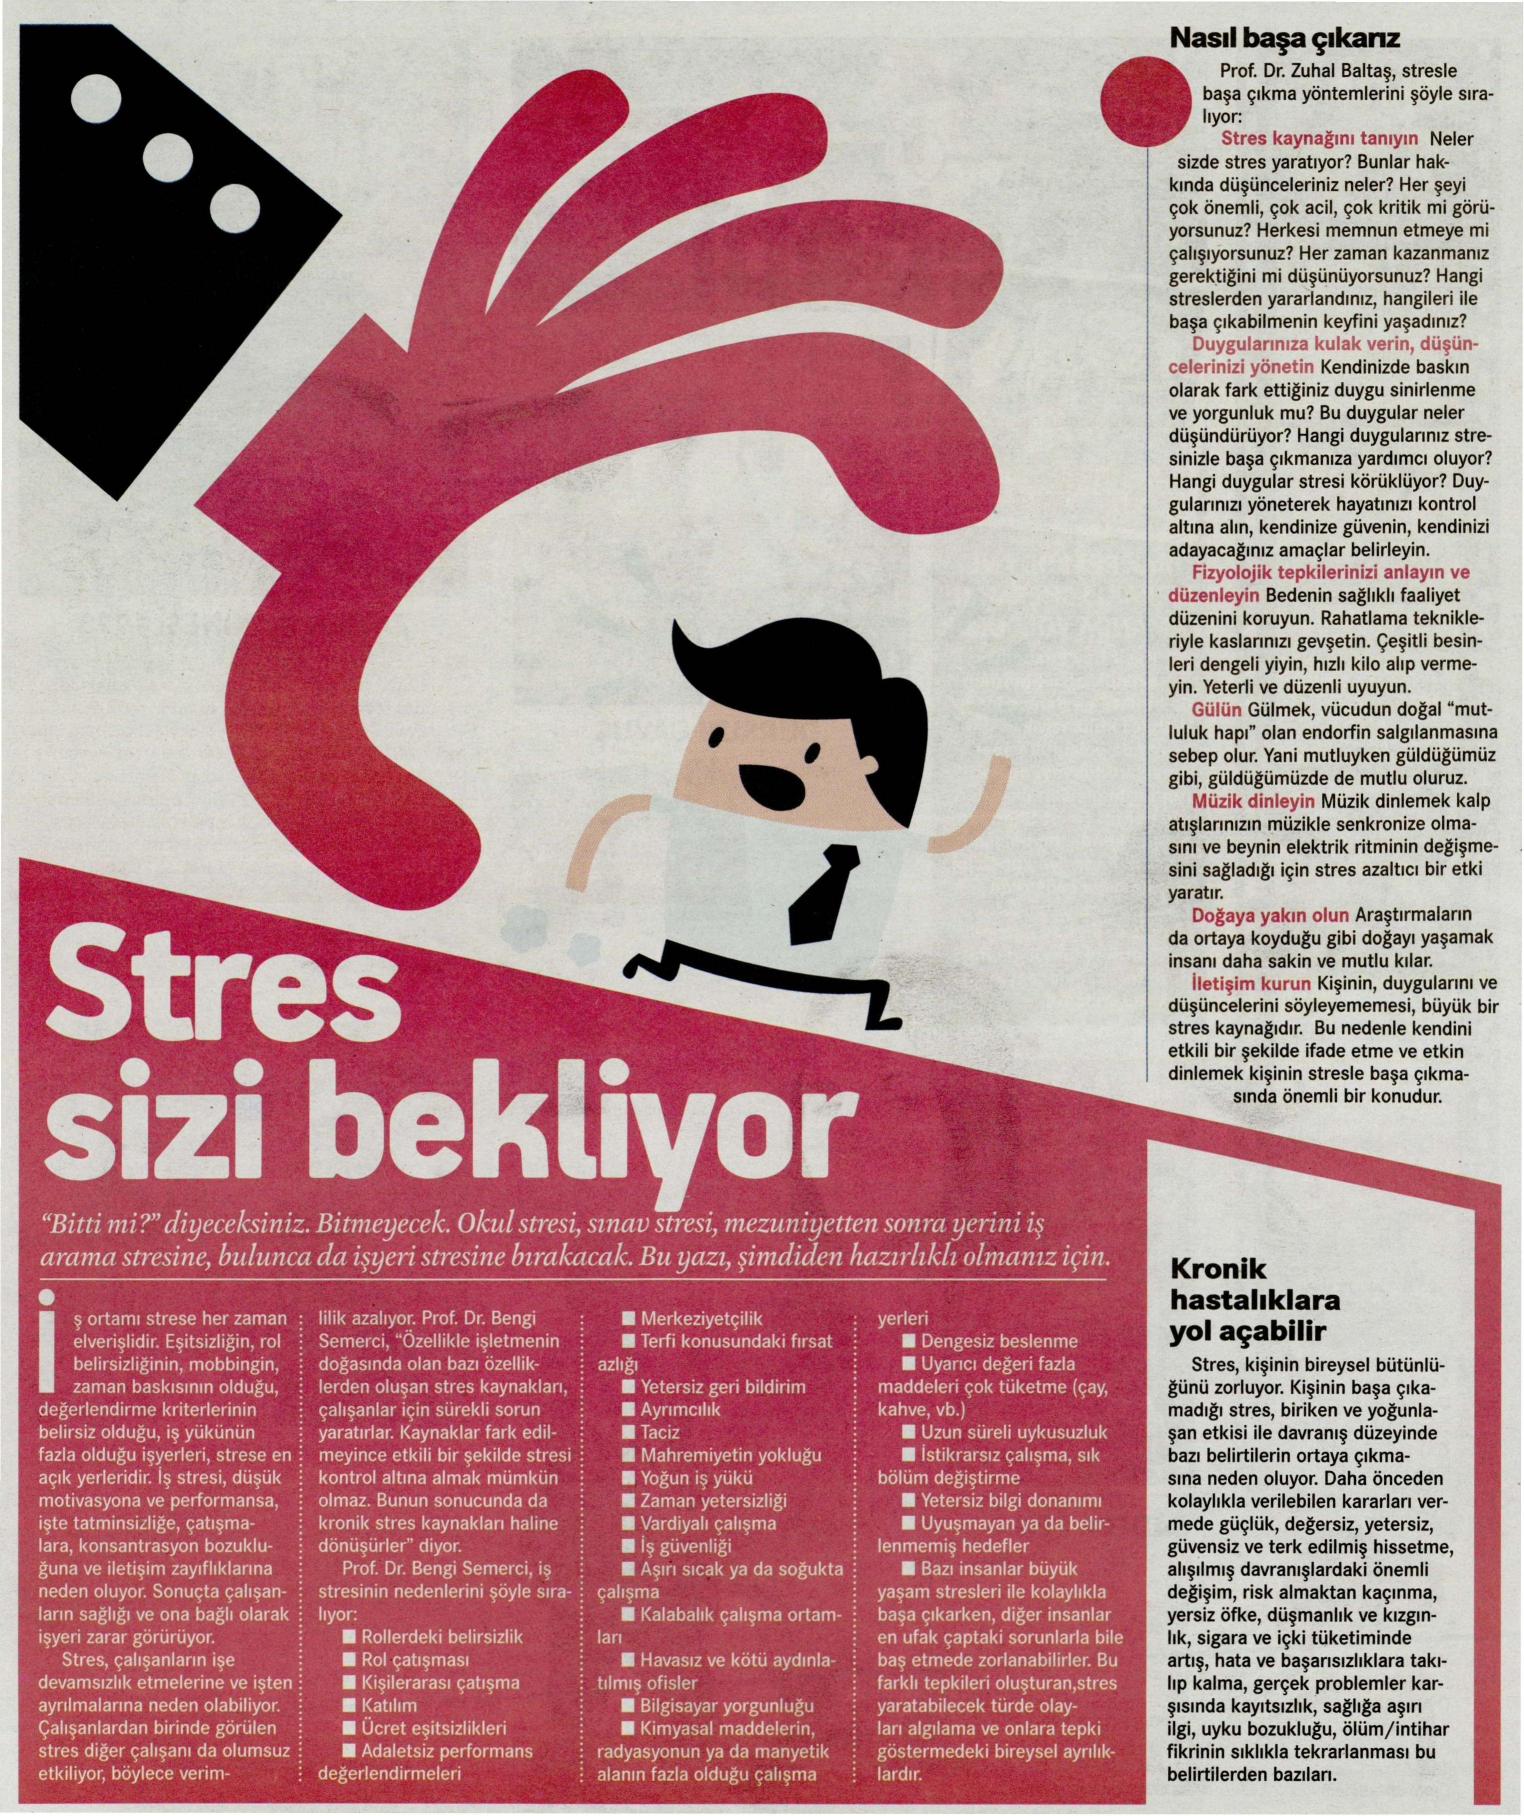 Stres sizi bekliyor - HÜRRİYET KAMPÜS 14.03.2014